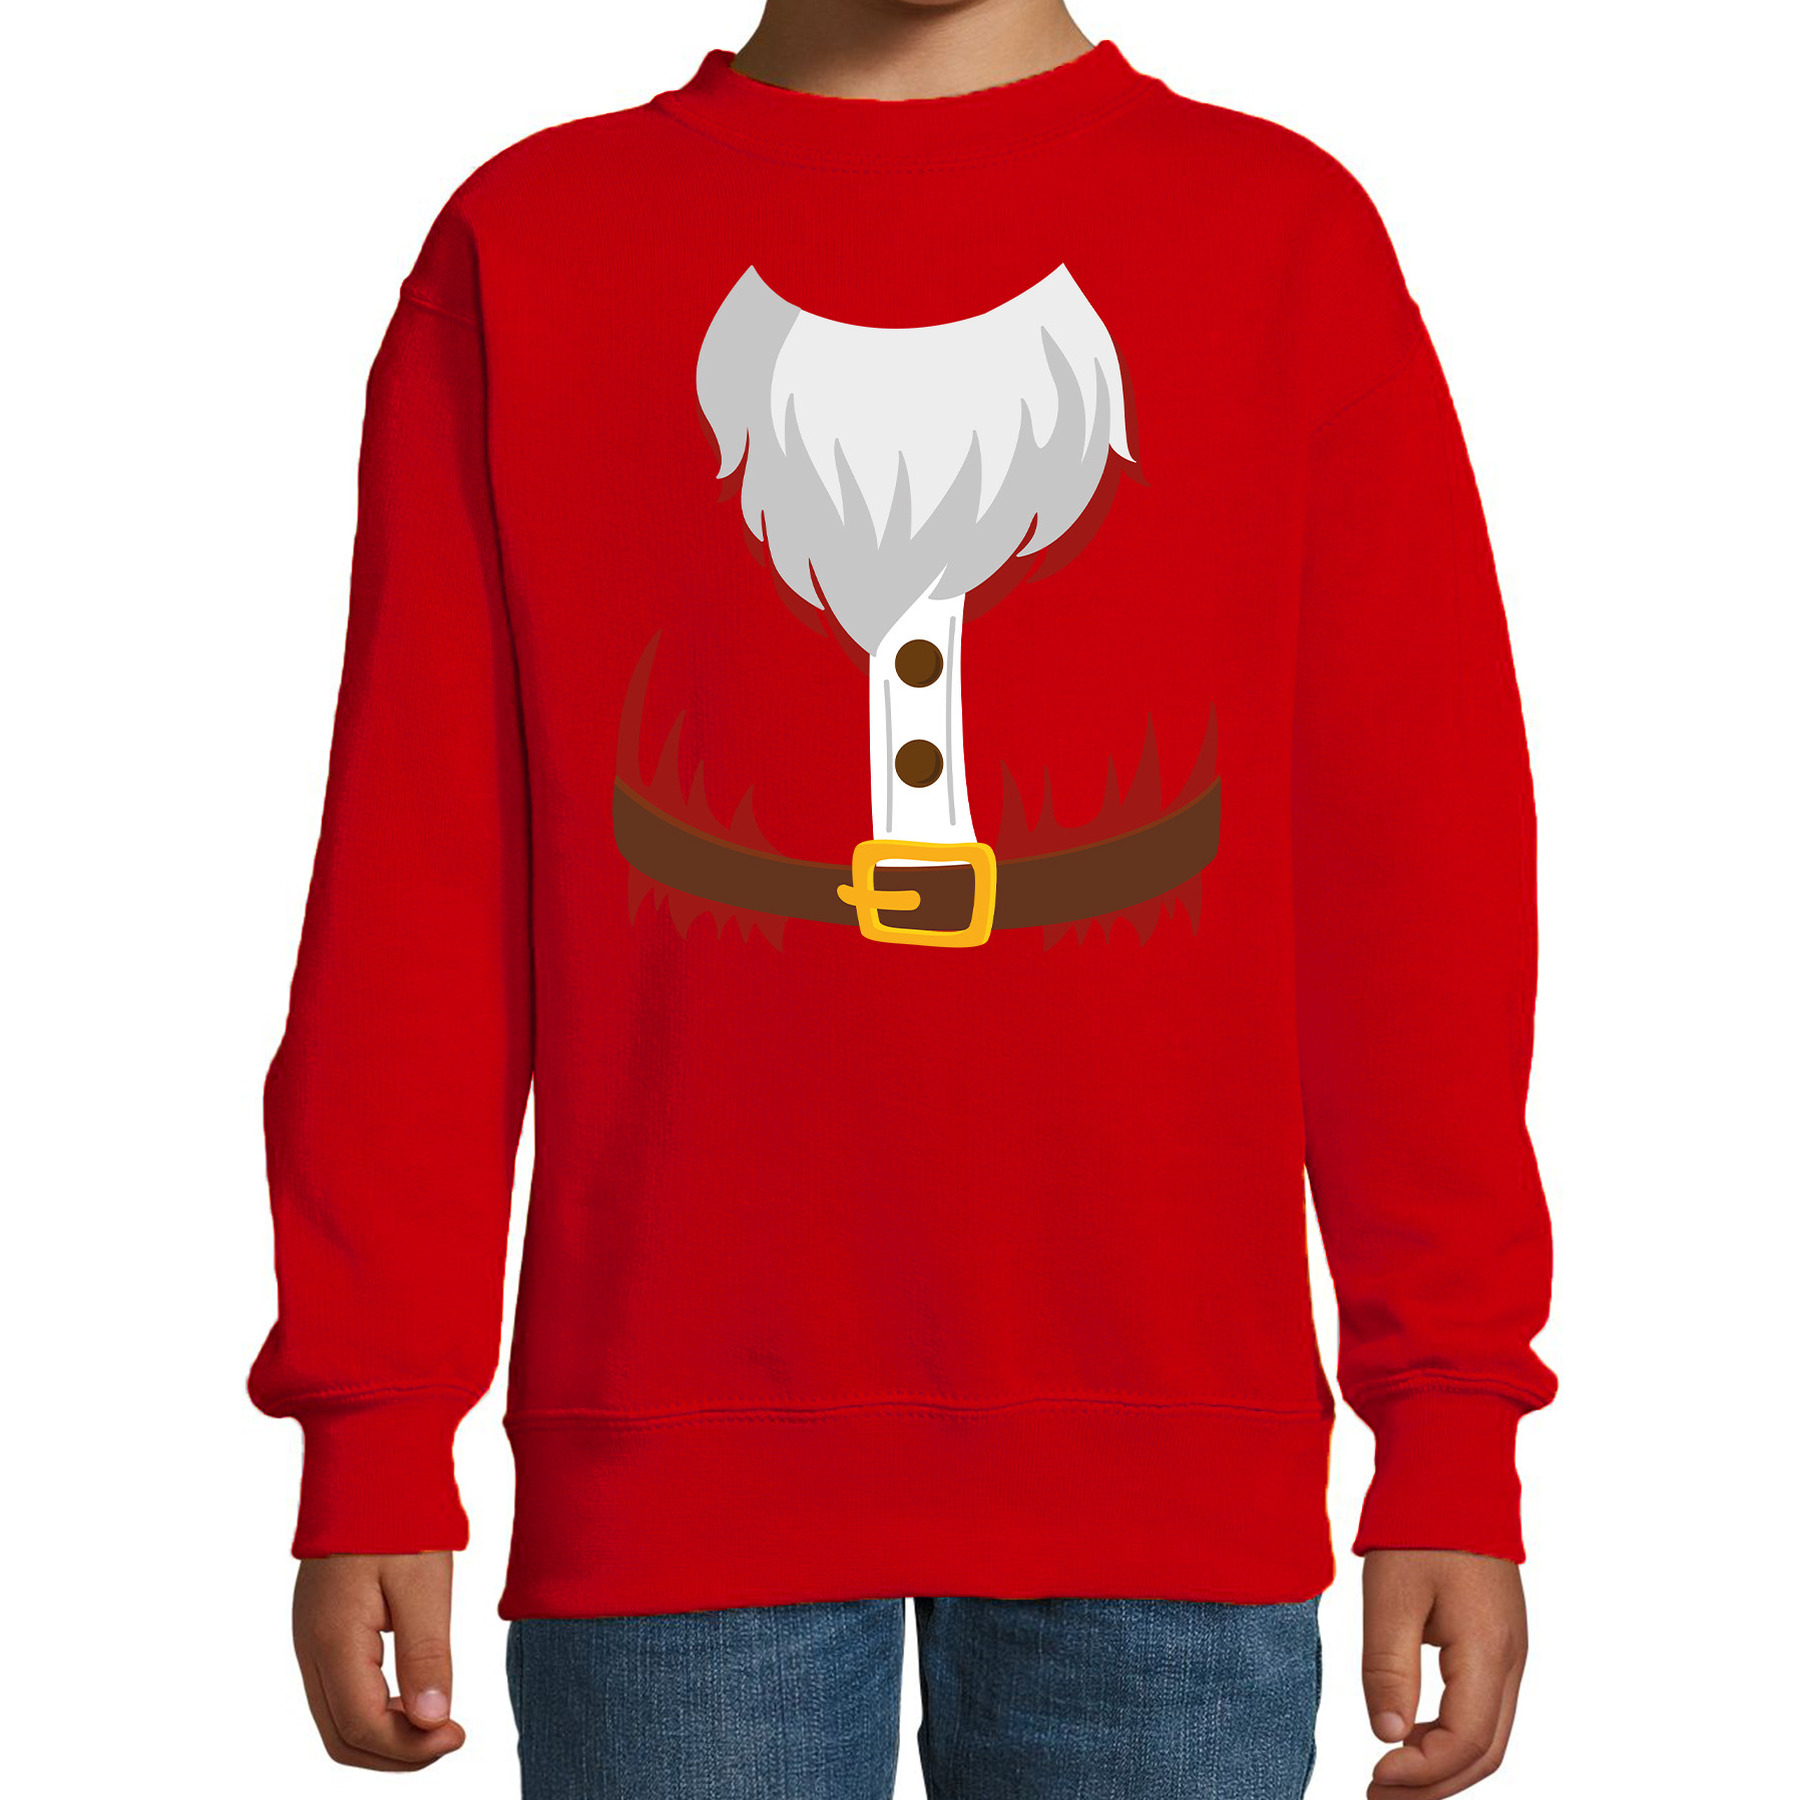 Kerstman kostuum verkleed sweater - trui rood voor kinderen